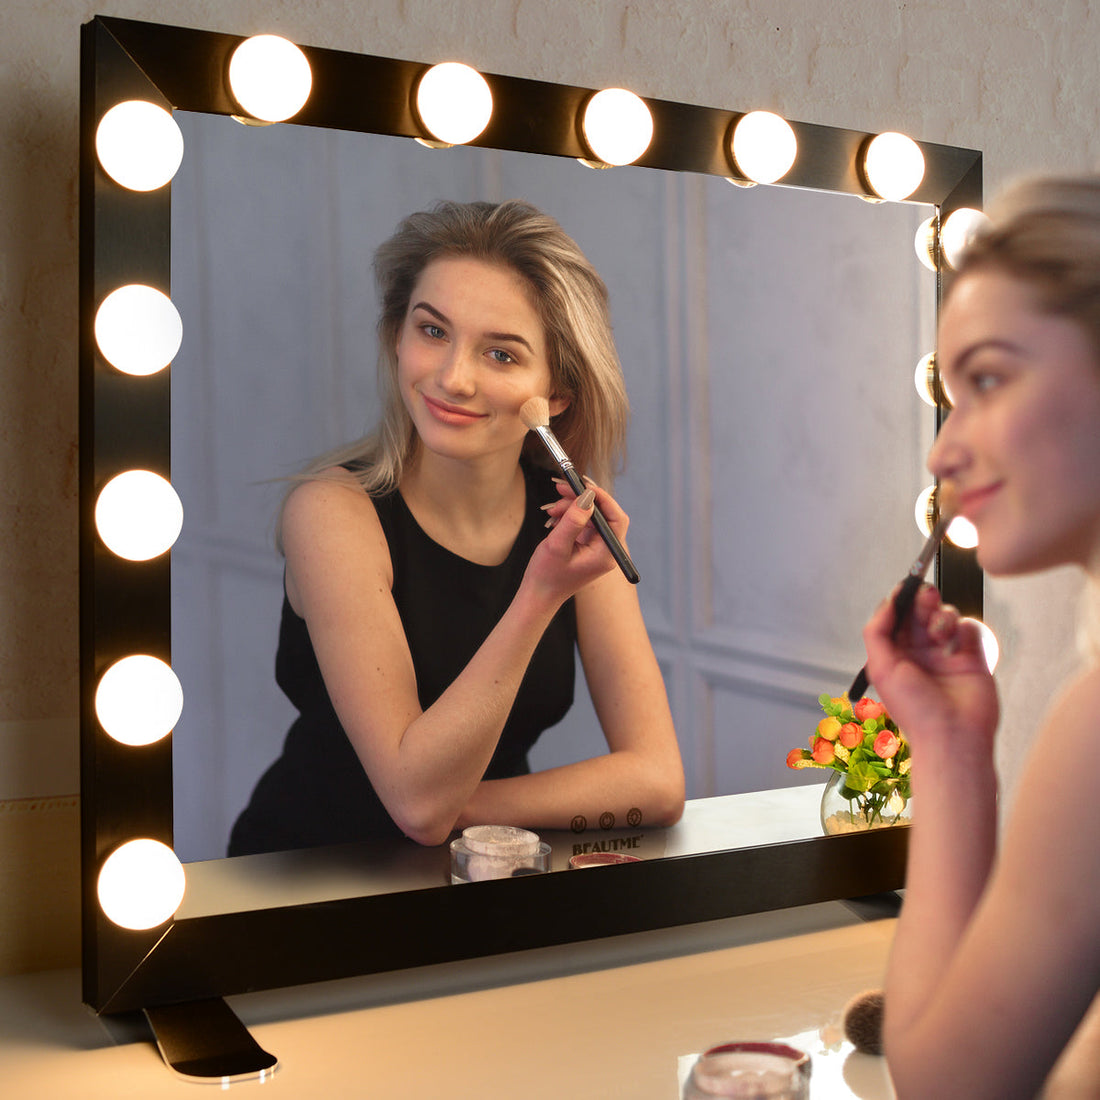 Hollywood Vanity Mirror with Lights Dressing Tabletop Vanity Mirror